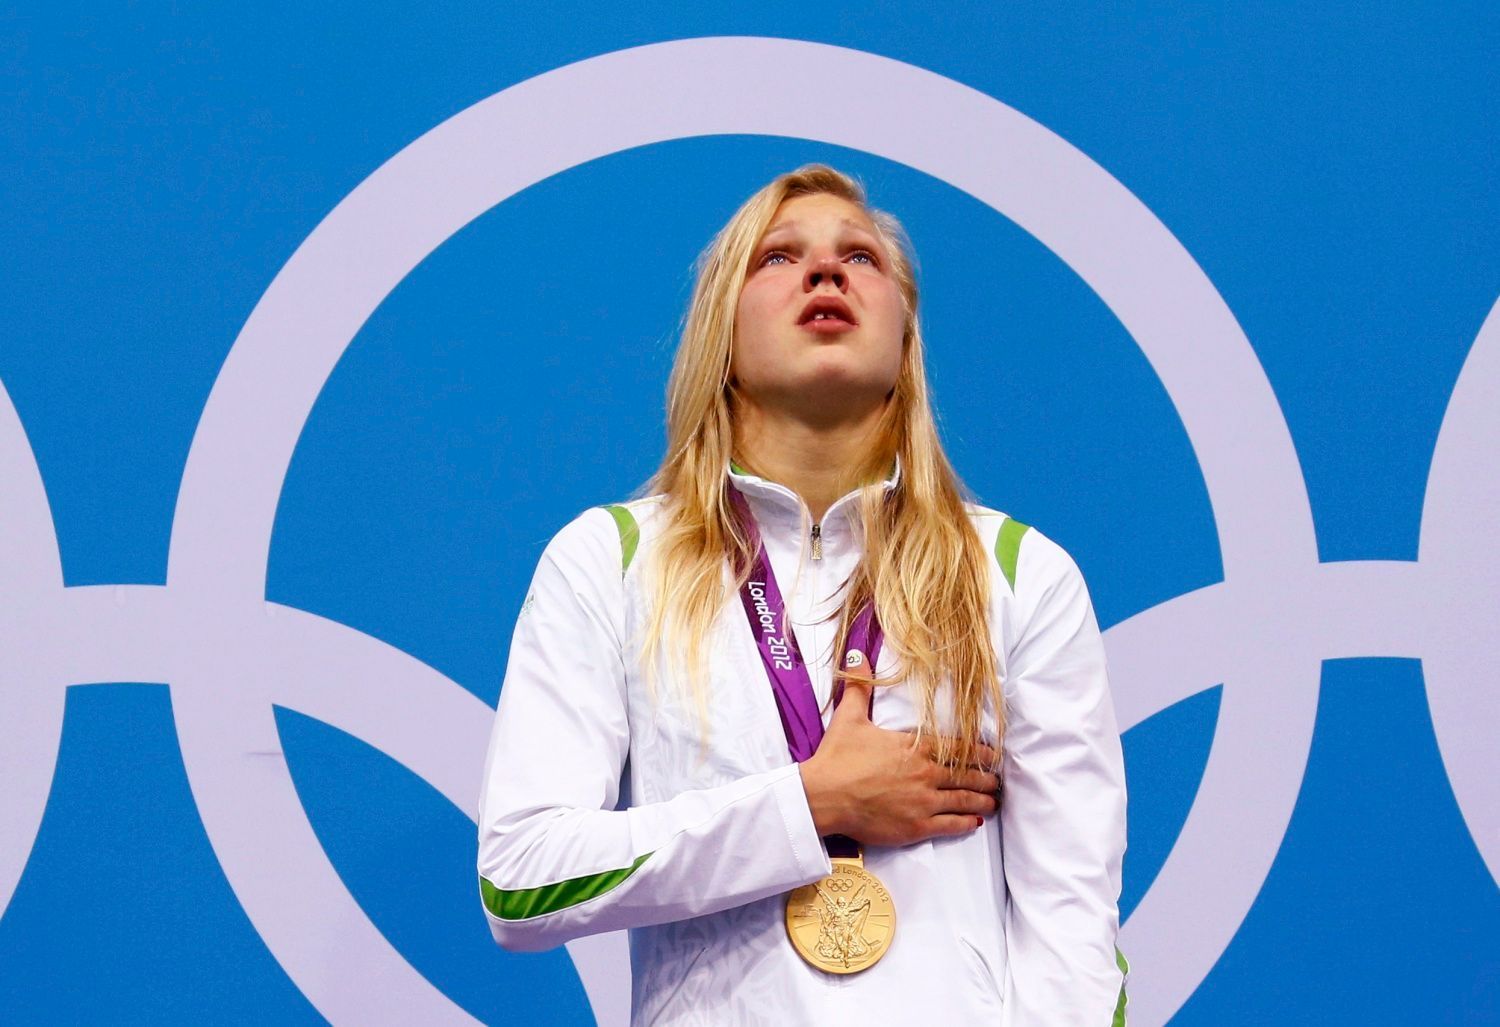 Litevská plavkyně Ruta Meilutyteová zpívá dojatě hymnu se zlatou medailí na krku za 100metrů prsařského závodu na OH 2012 v Londýně.